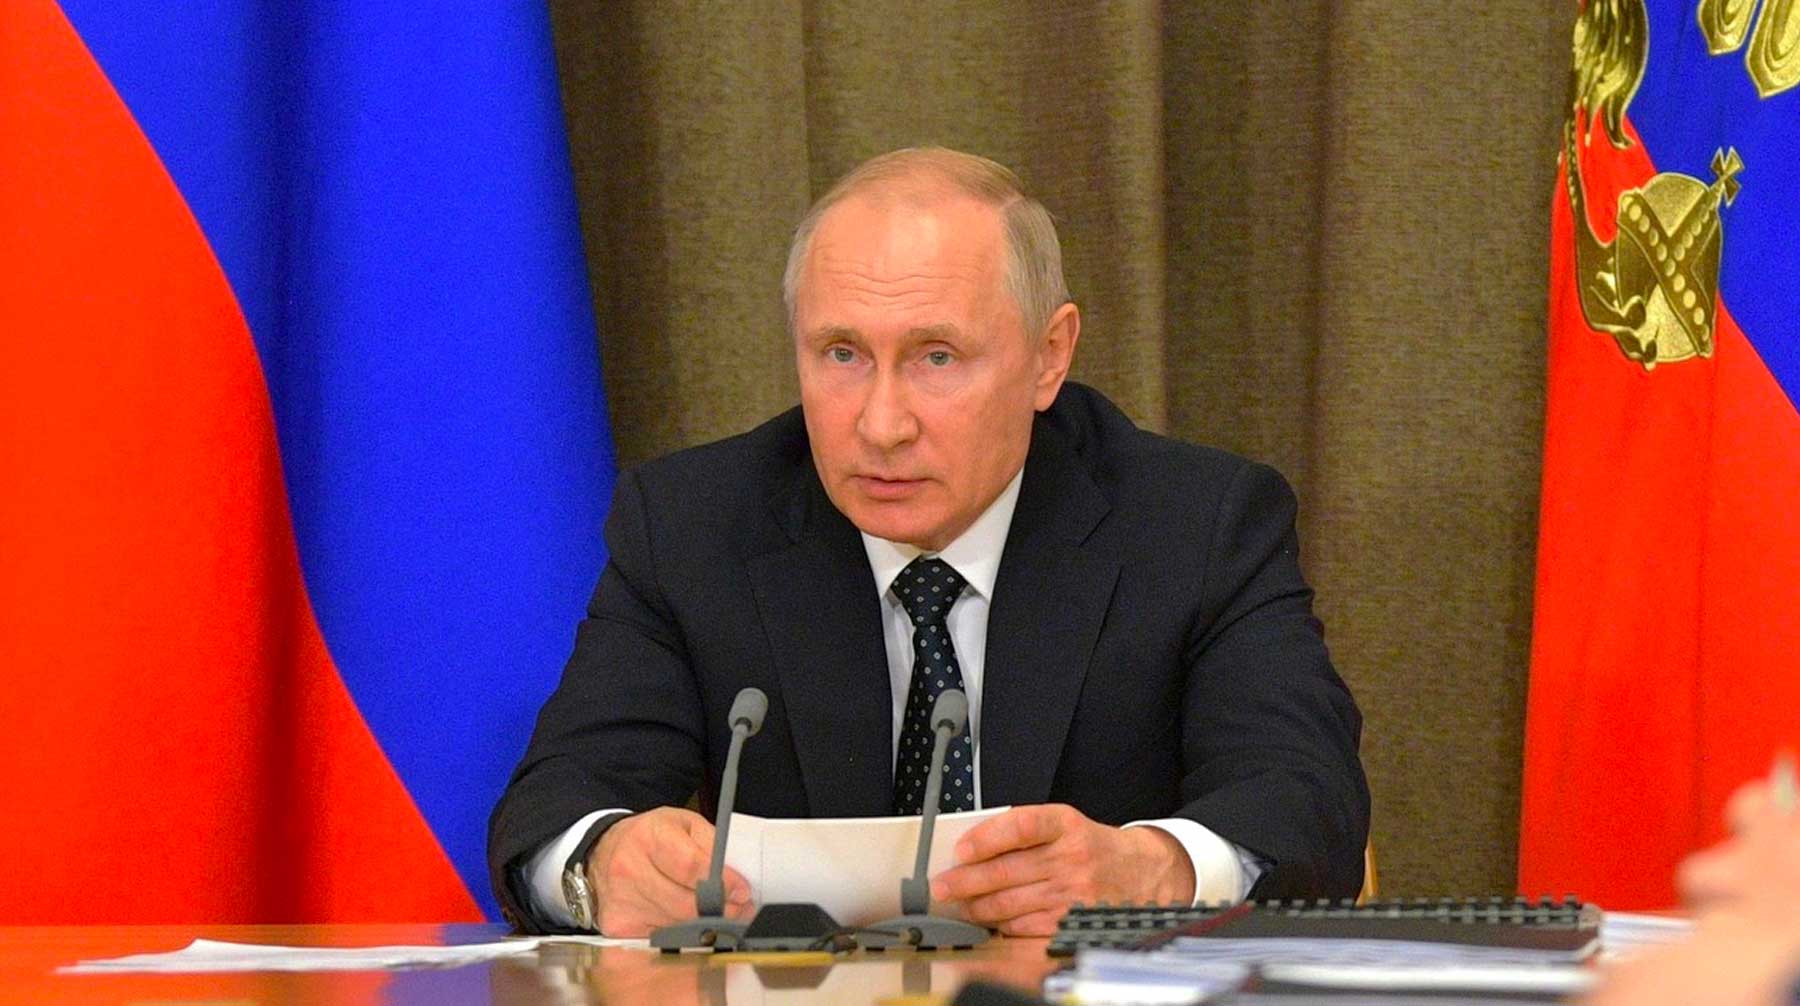 Лидер России согласен вынести спорный вопрос на плебисцит Фото: © GLOBAL LOOK press / Kremlin Pool